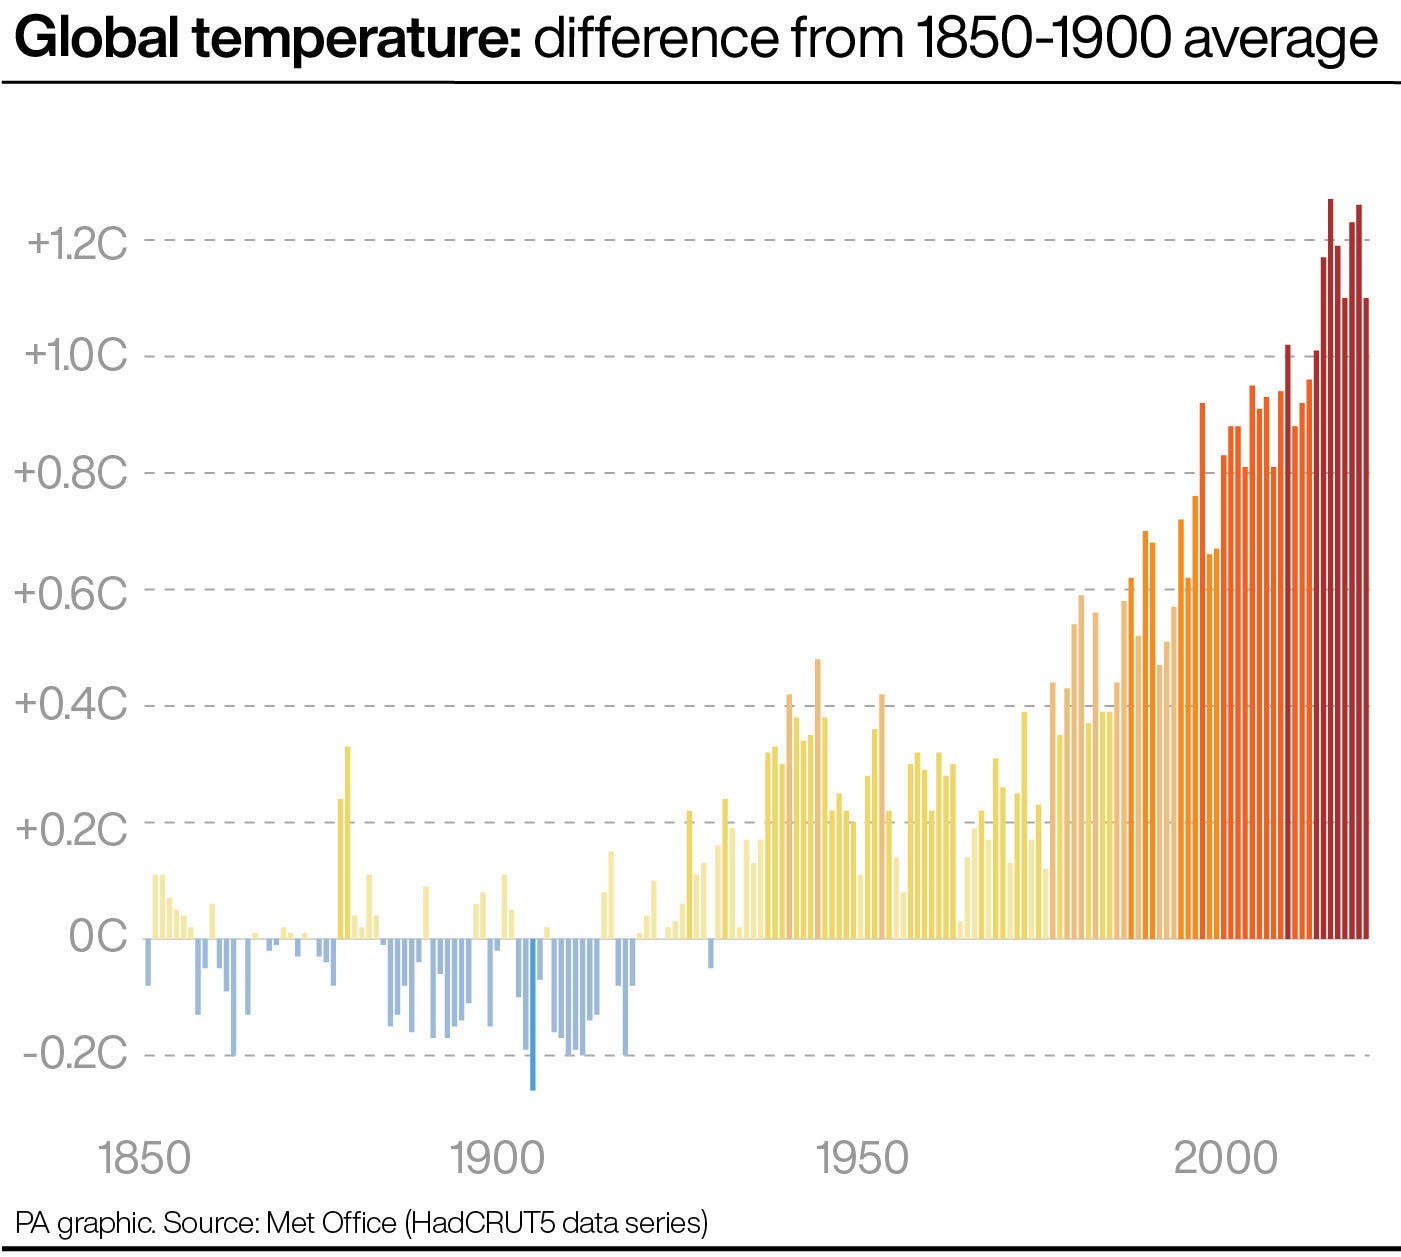 Temperatura global: Comparaciones de las tempetaturas promedio desde 1850